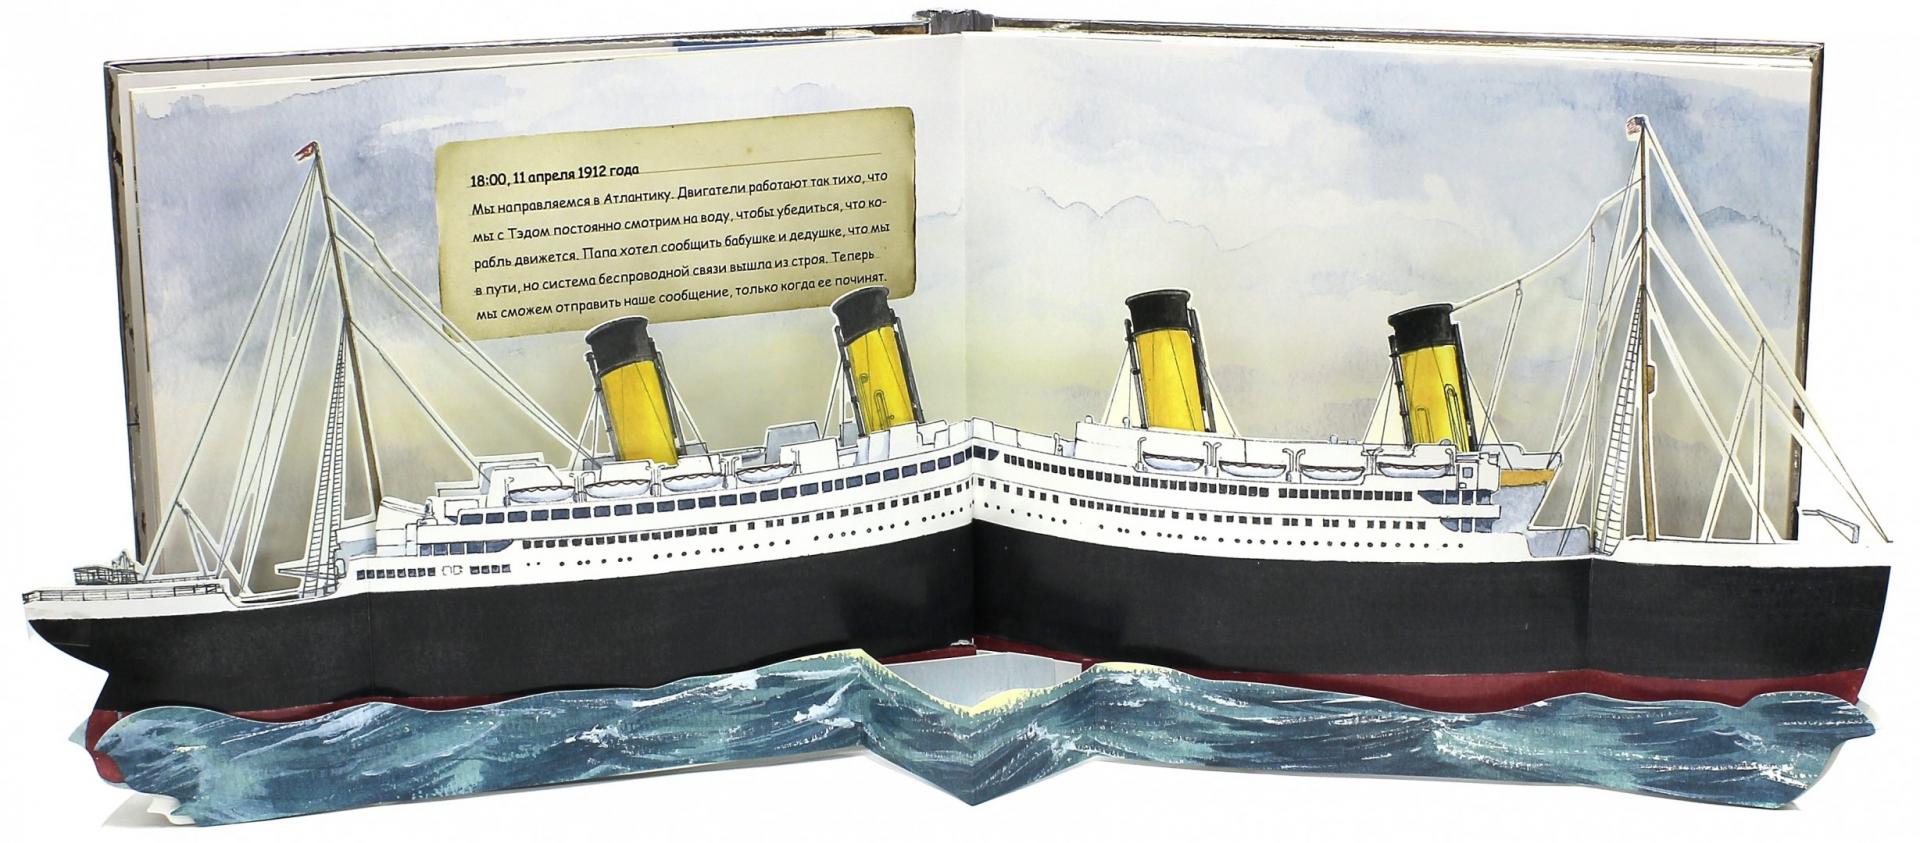 Иллюстрация 1 из 15 для Титаник. Корабль мечты - Duncan Crosbie | Лабиринт - книги. Источник: Лабиринт